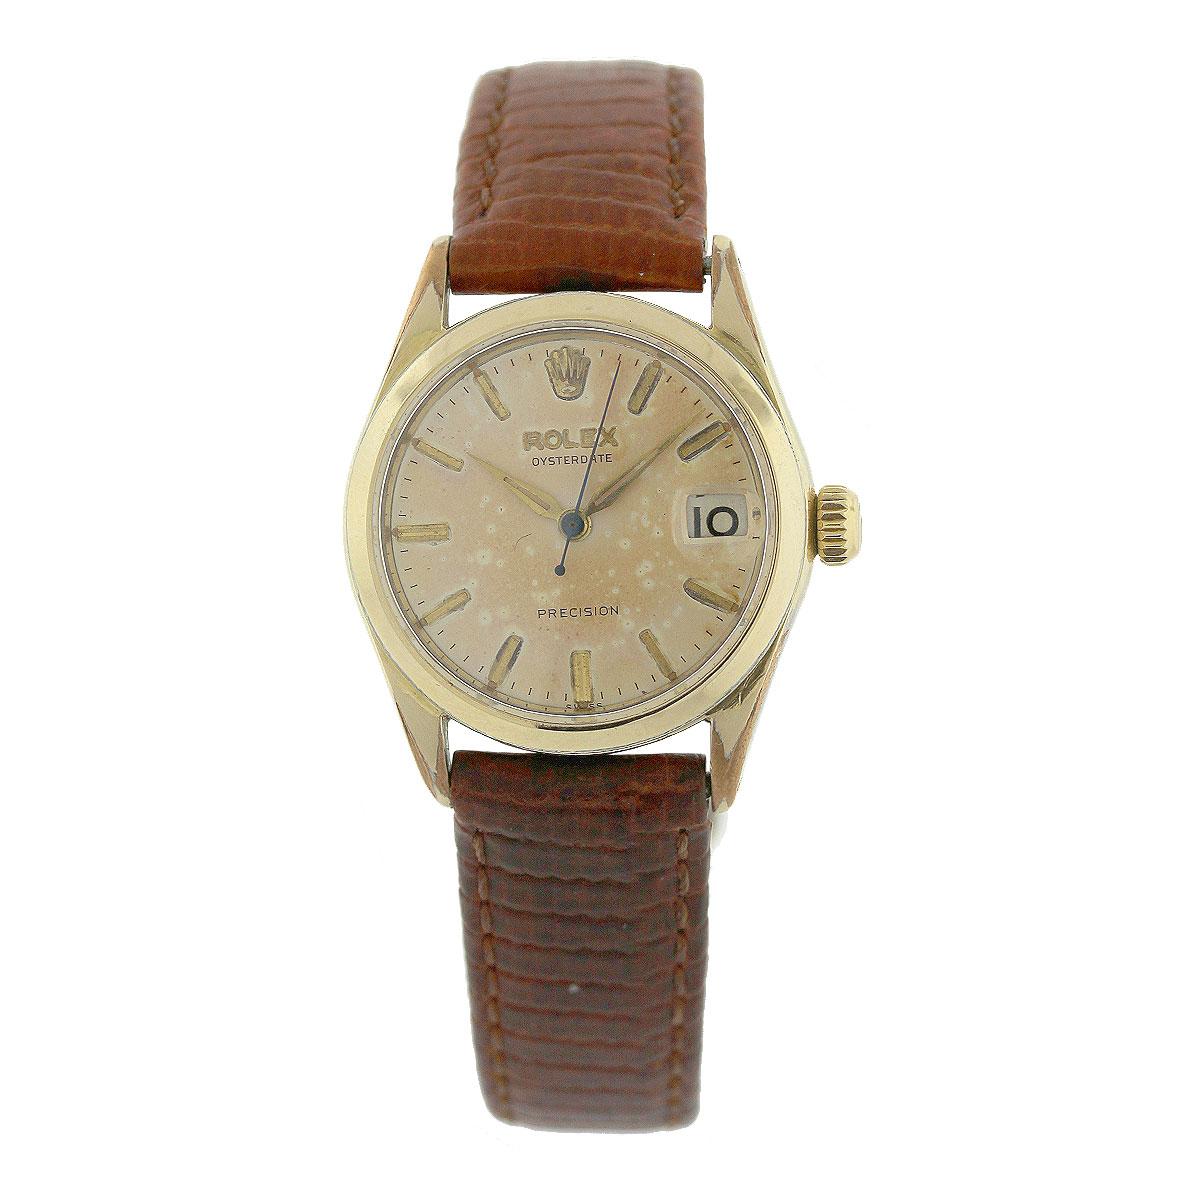 La montre de précision Rolex 6466 Oysterdate Vintage Plated Shell est un chef-d'œuvre vintage qui témoigne de l'excellence durable de l'artisanat Rolex. Ce garde-temps, qui allie style et précision, occupe une place particulière dans l'univers des